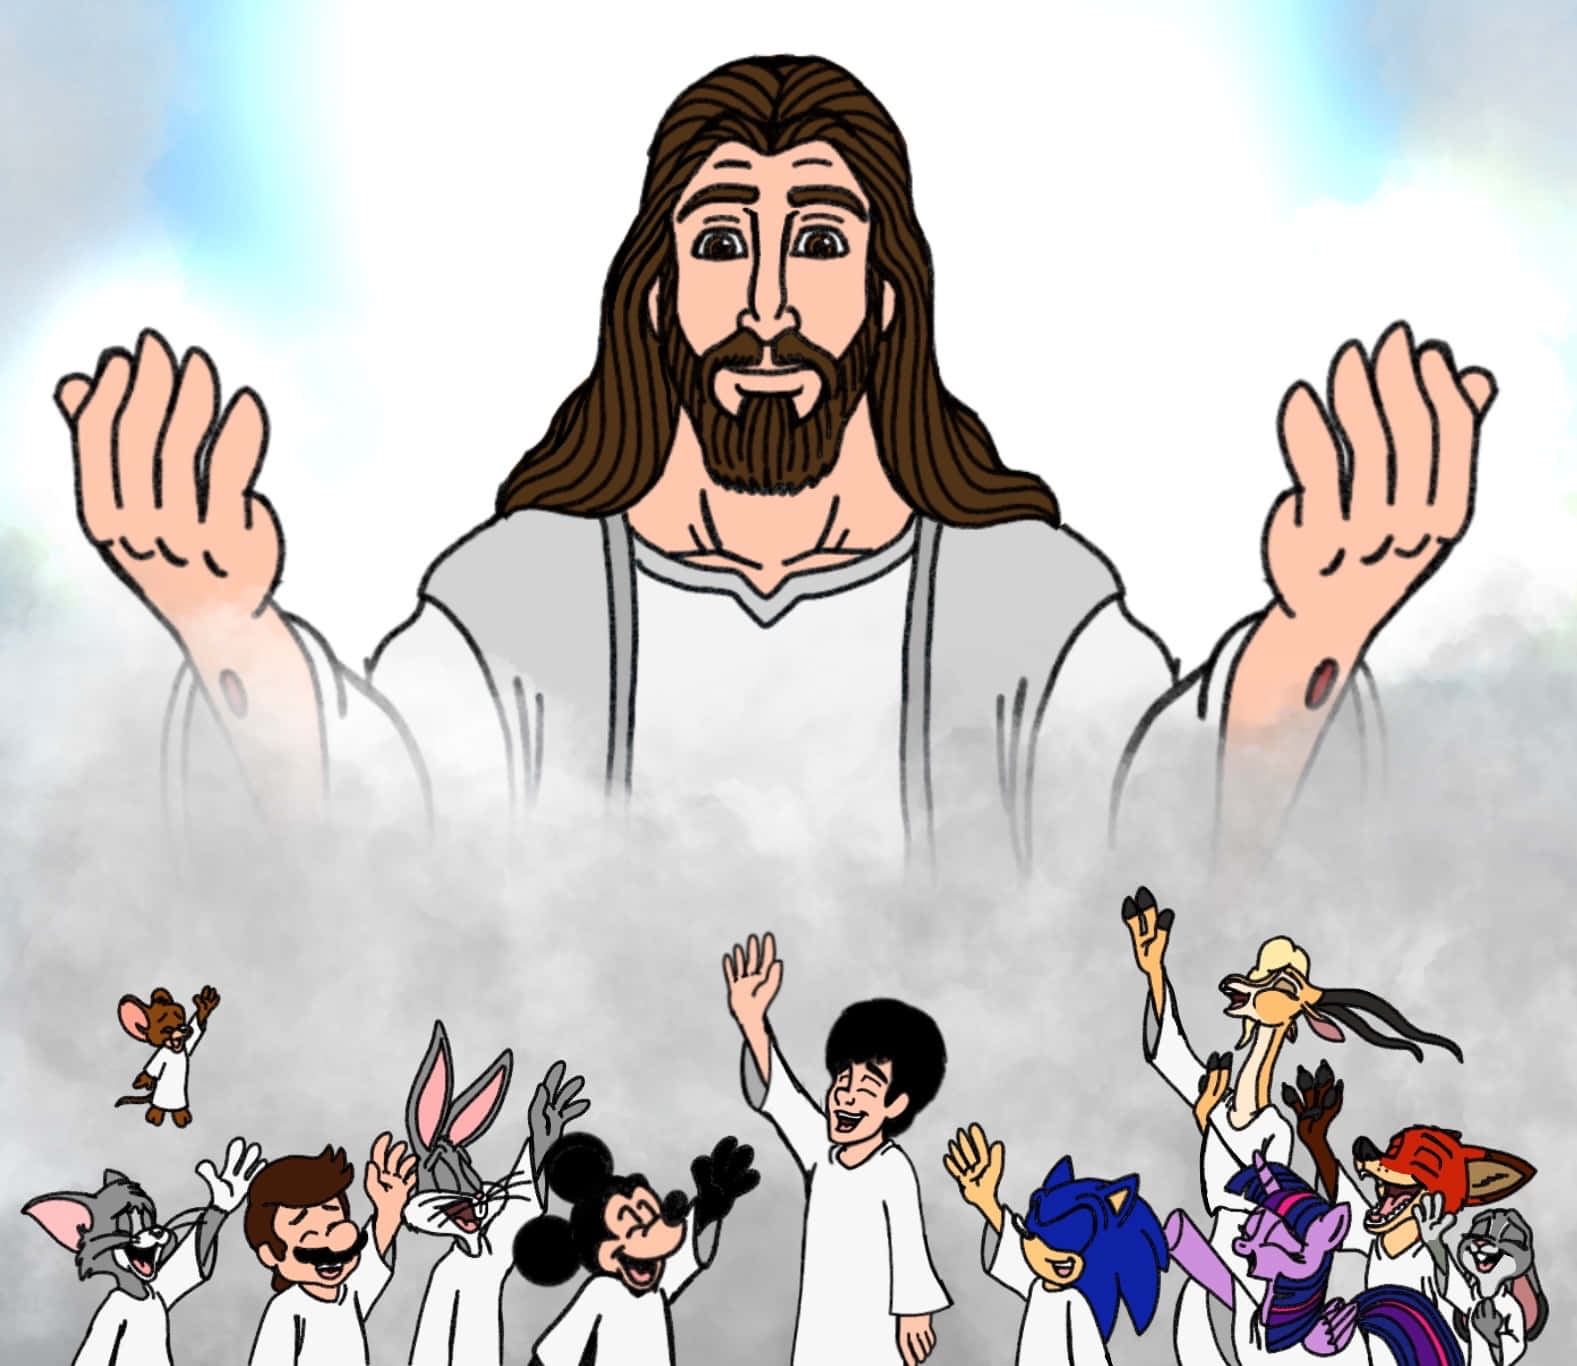 Anime of Jesus' Last Day - YouTube